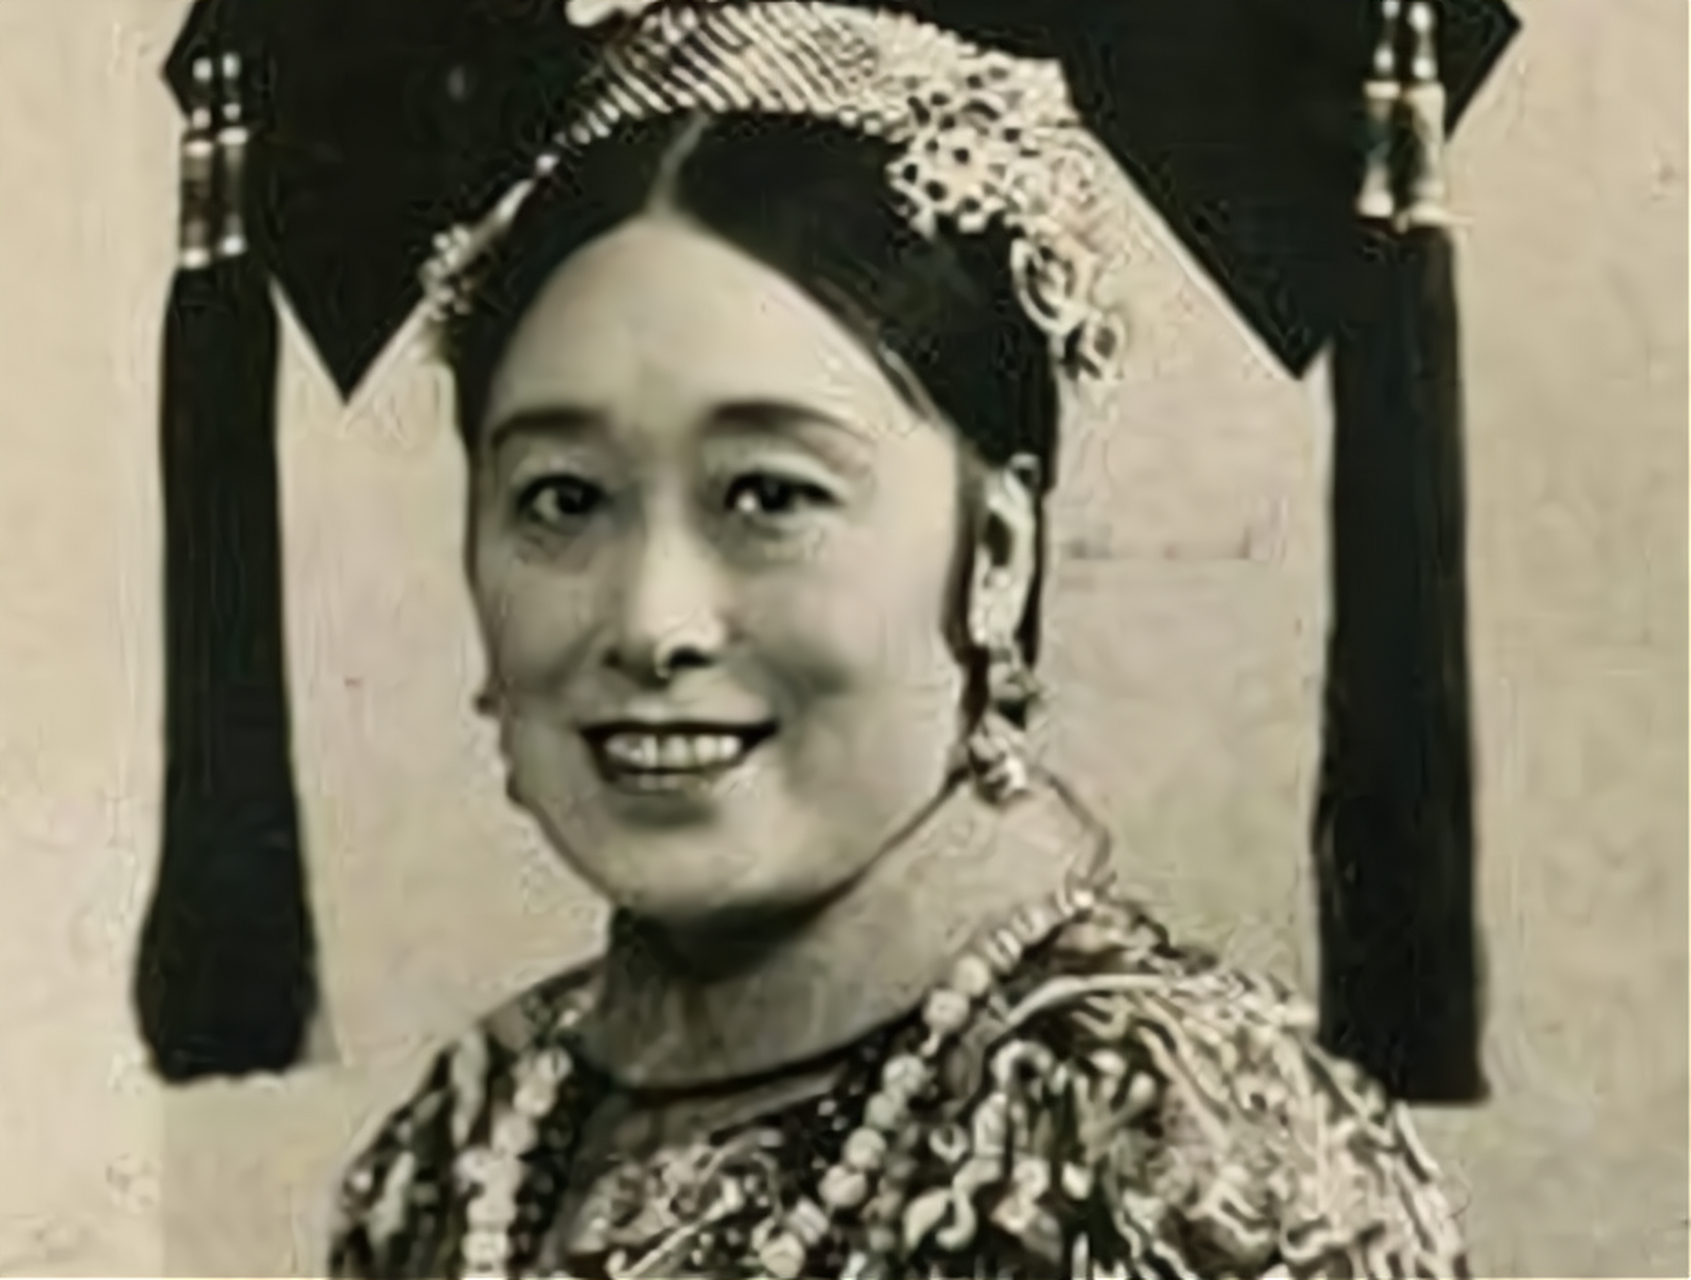   德龄公主名字叫做裕德龄,她的父亲叫裕庚原,是大清朝派往日本的